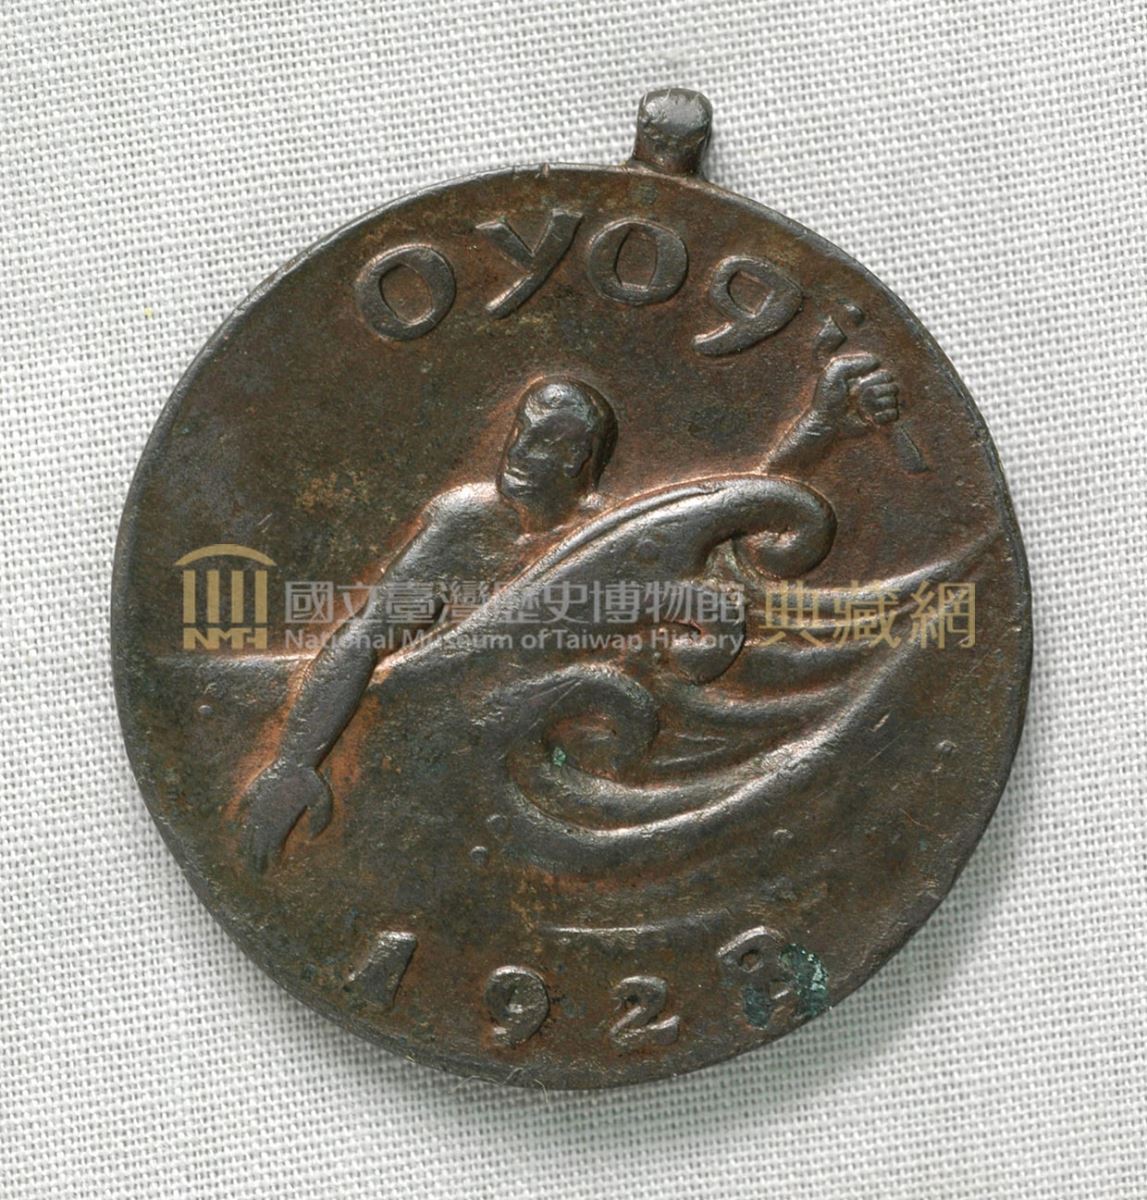 臺灣體育協會水泳部紀念徽章